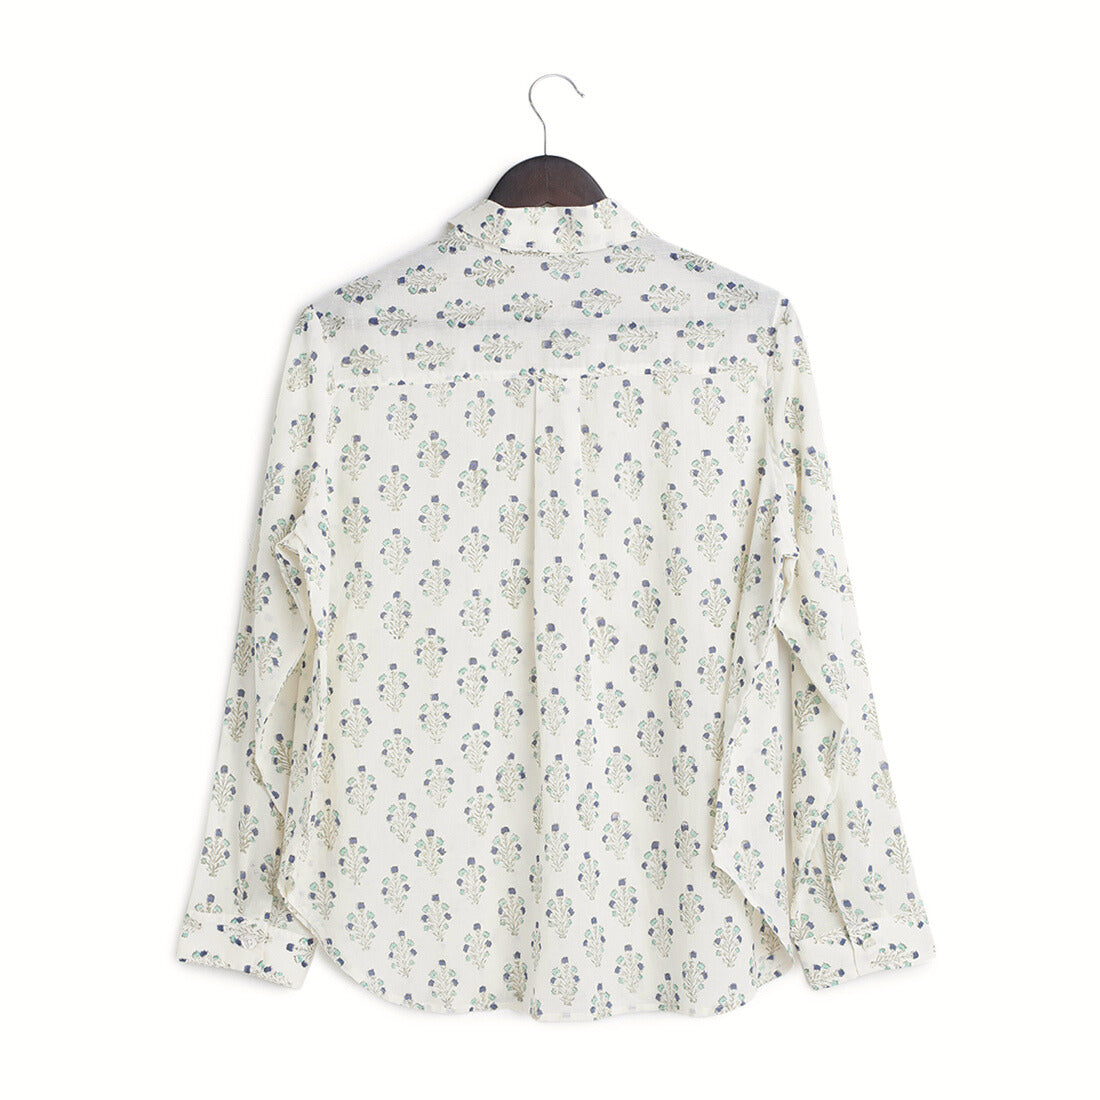 Cotton Regular Full Sleeves Teal & Indigo Block Print Shirt - Back Image